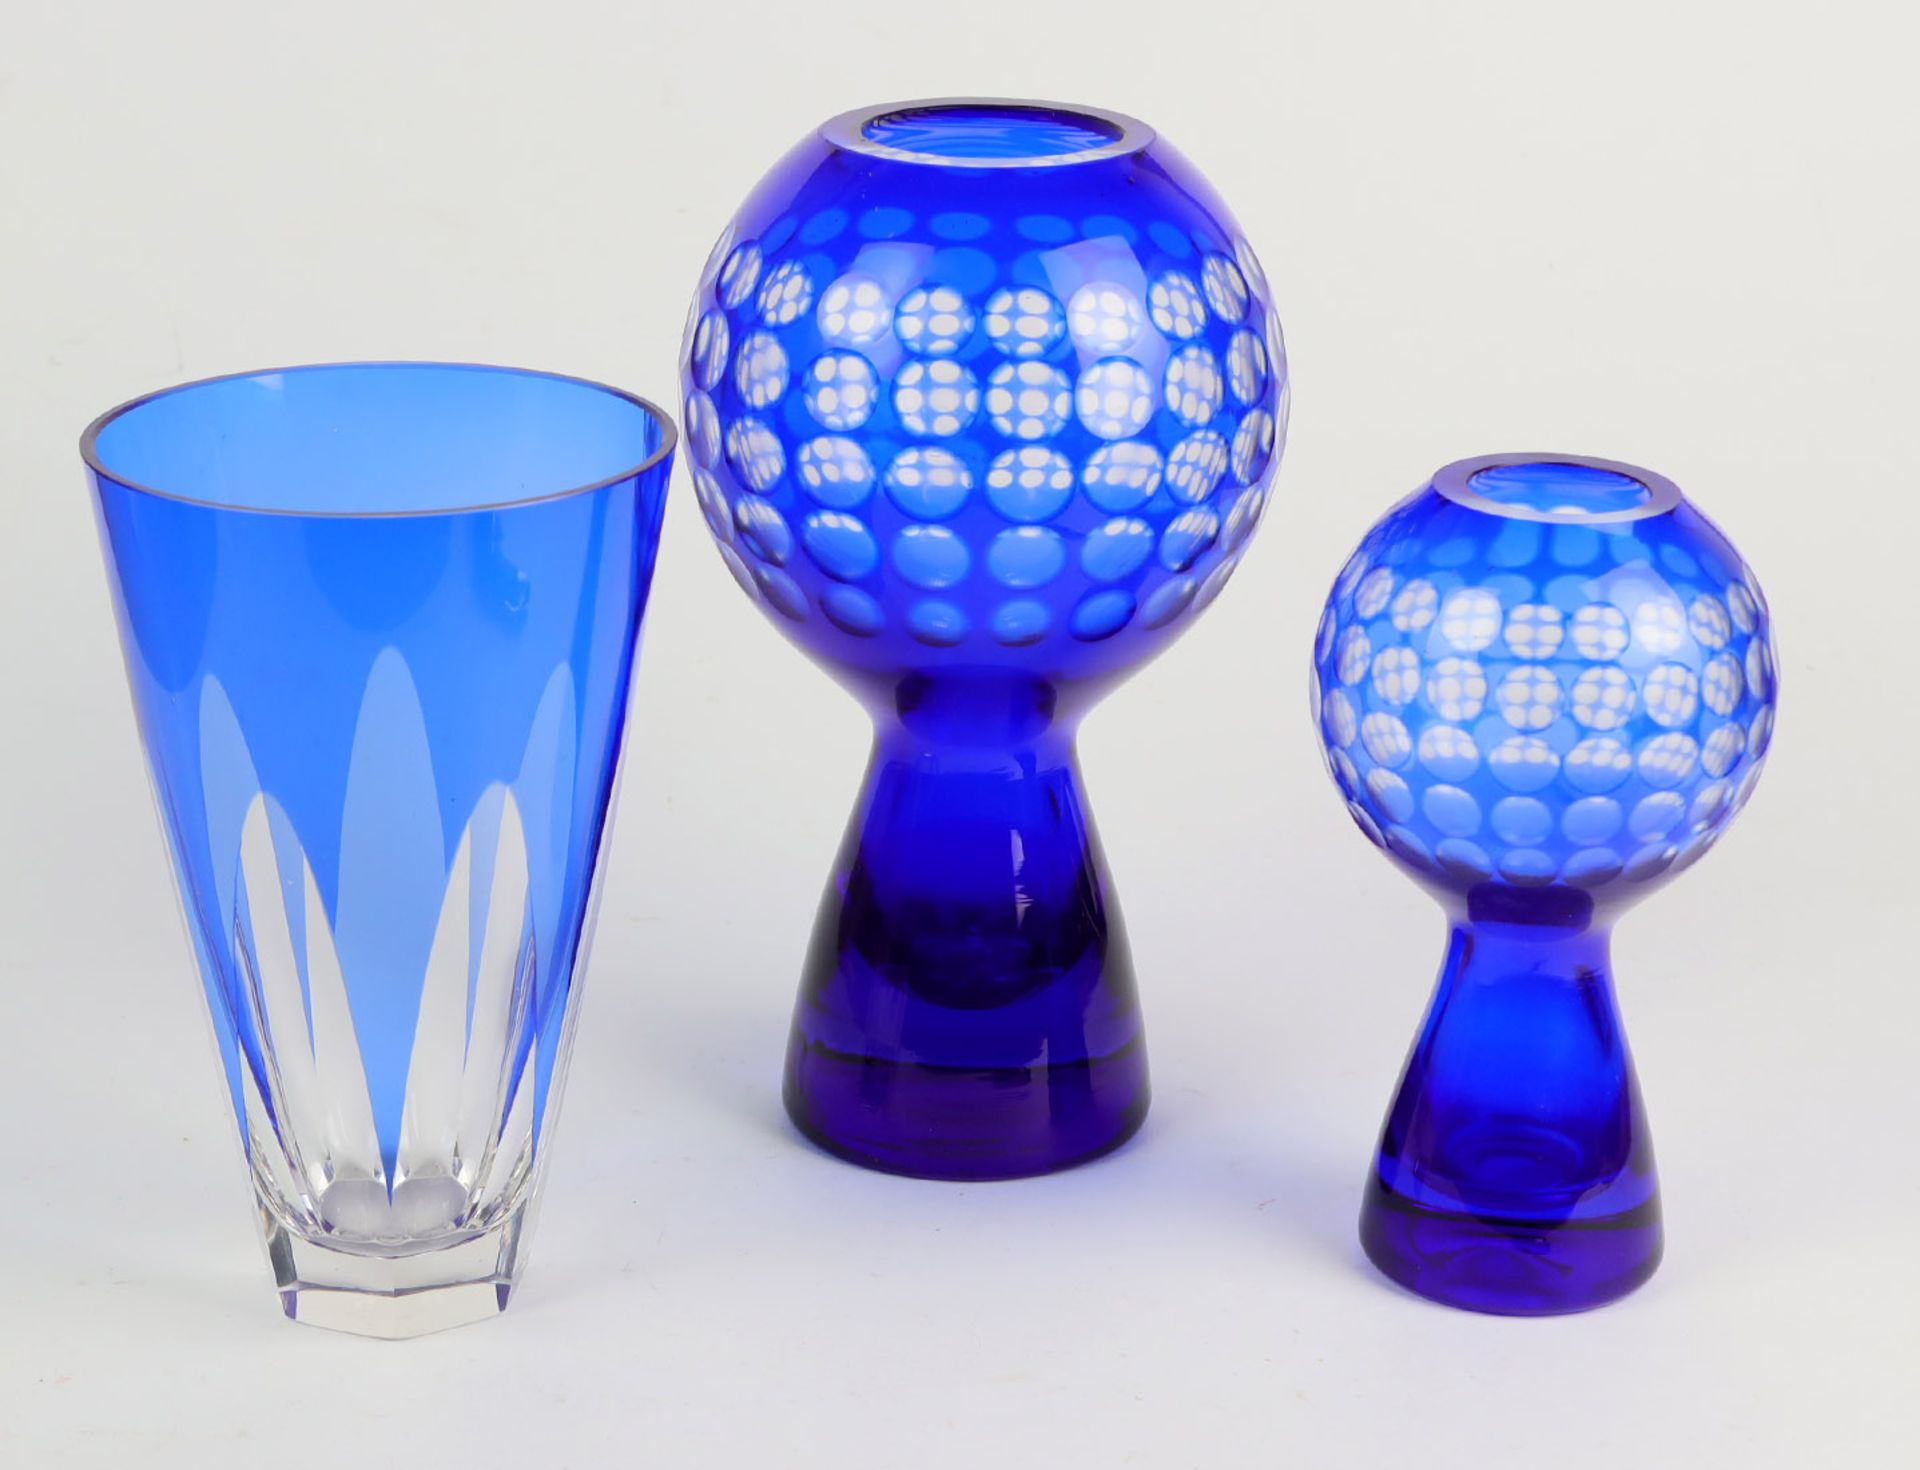 3 Kristallvasenfarbloses Kristallglas mundgeblasen, blau überfangen u. von Hand besch